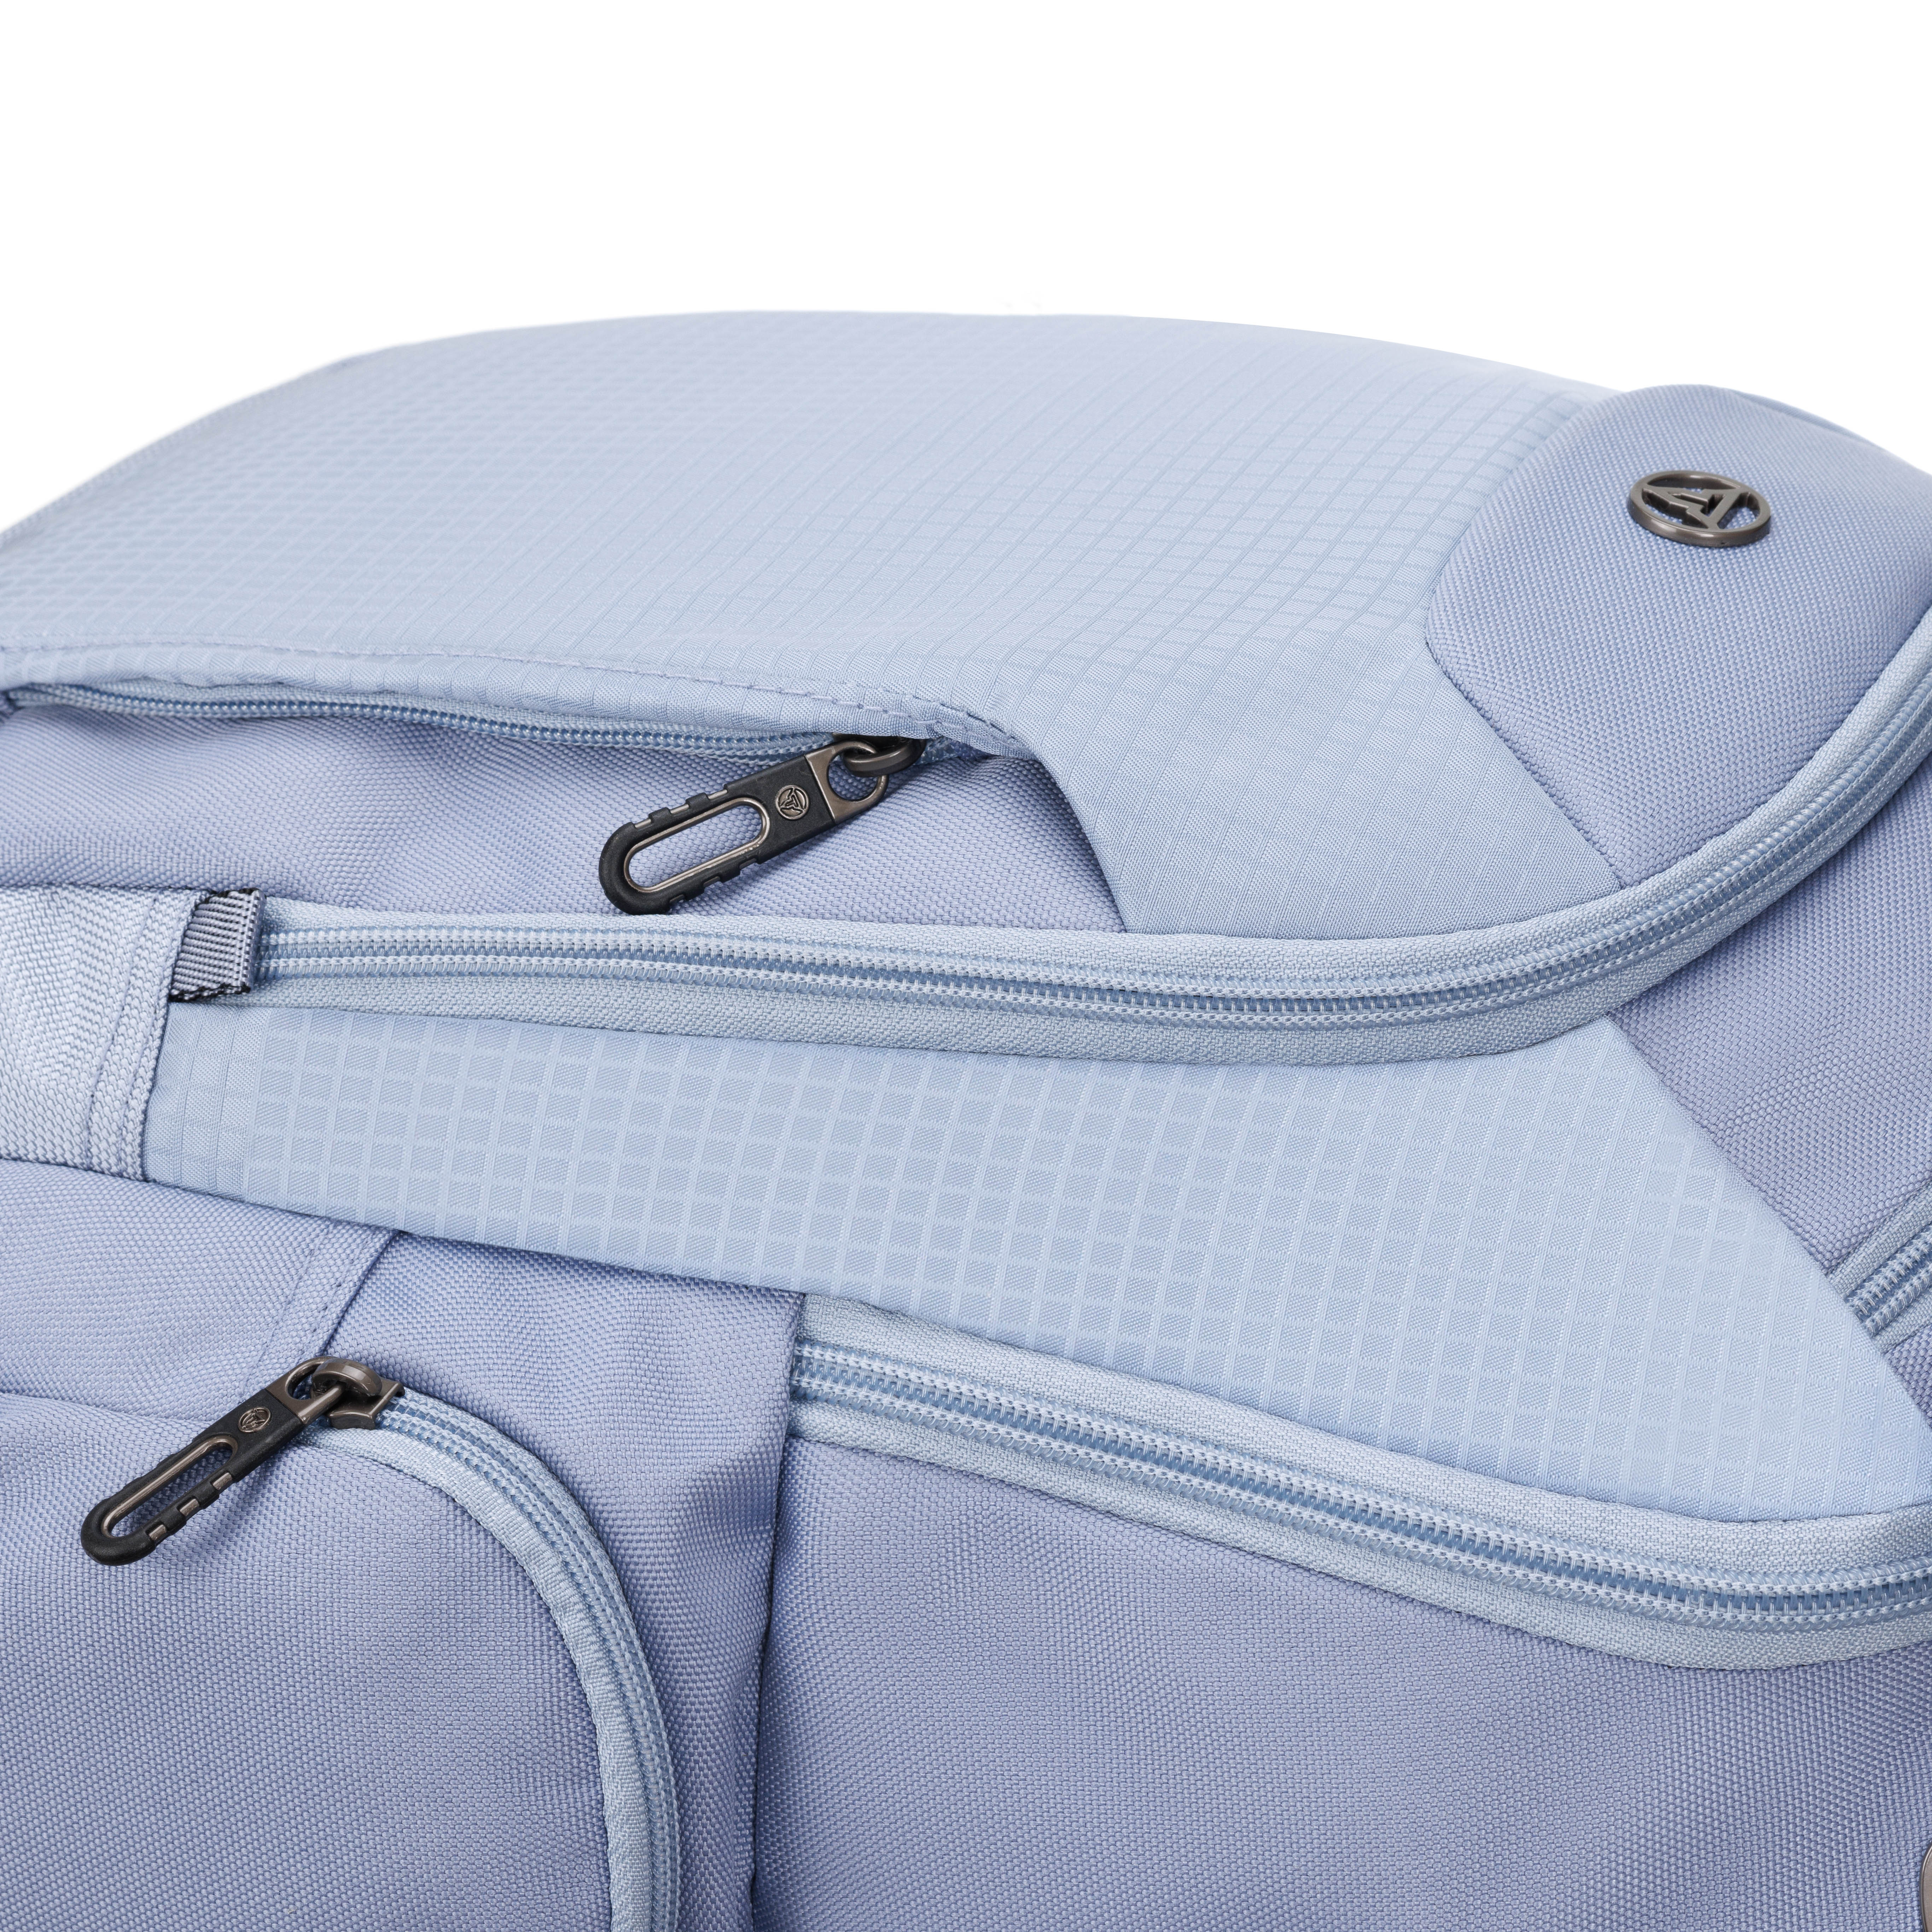 Рюкзак TORBER XPLOR с отделением для ноутбука 15 дюймов серый - фото 6